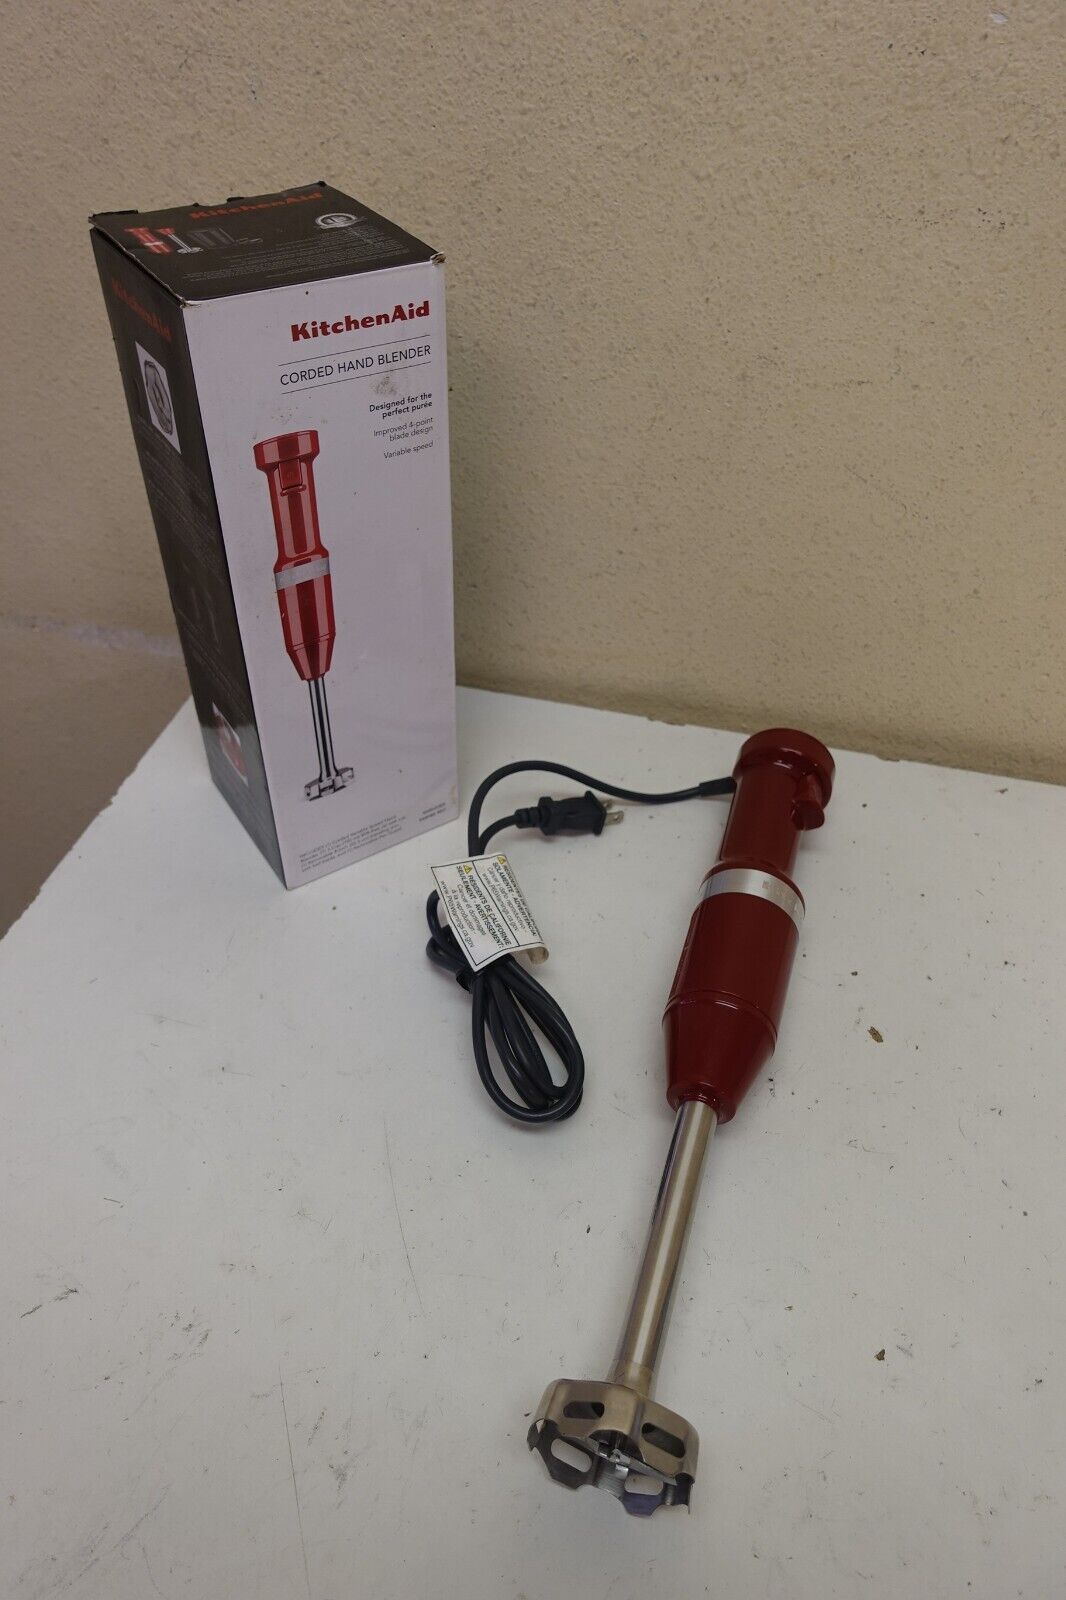 Kitchenaid Variable Speed Corded Hand Blender Handheld Khbv53er Empire Red